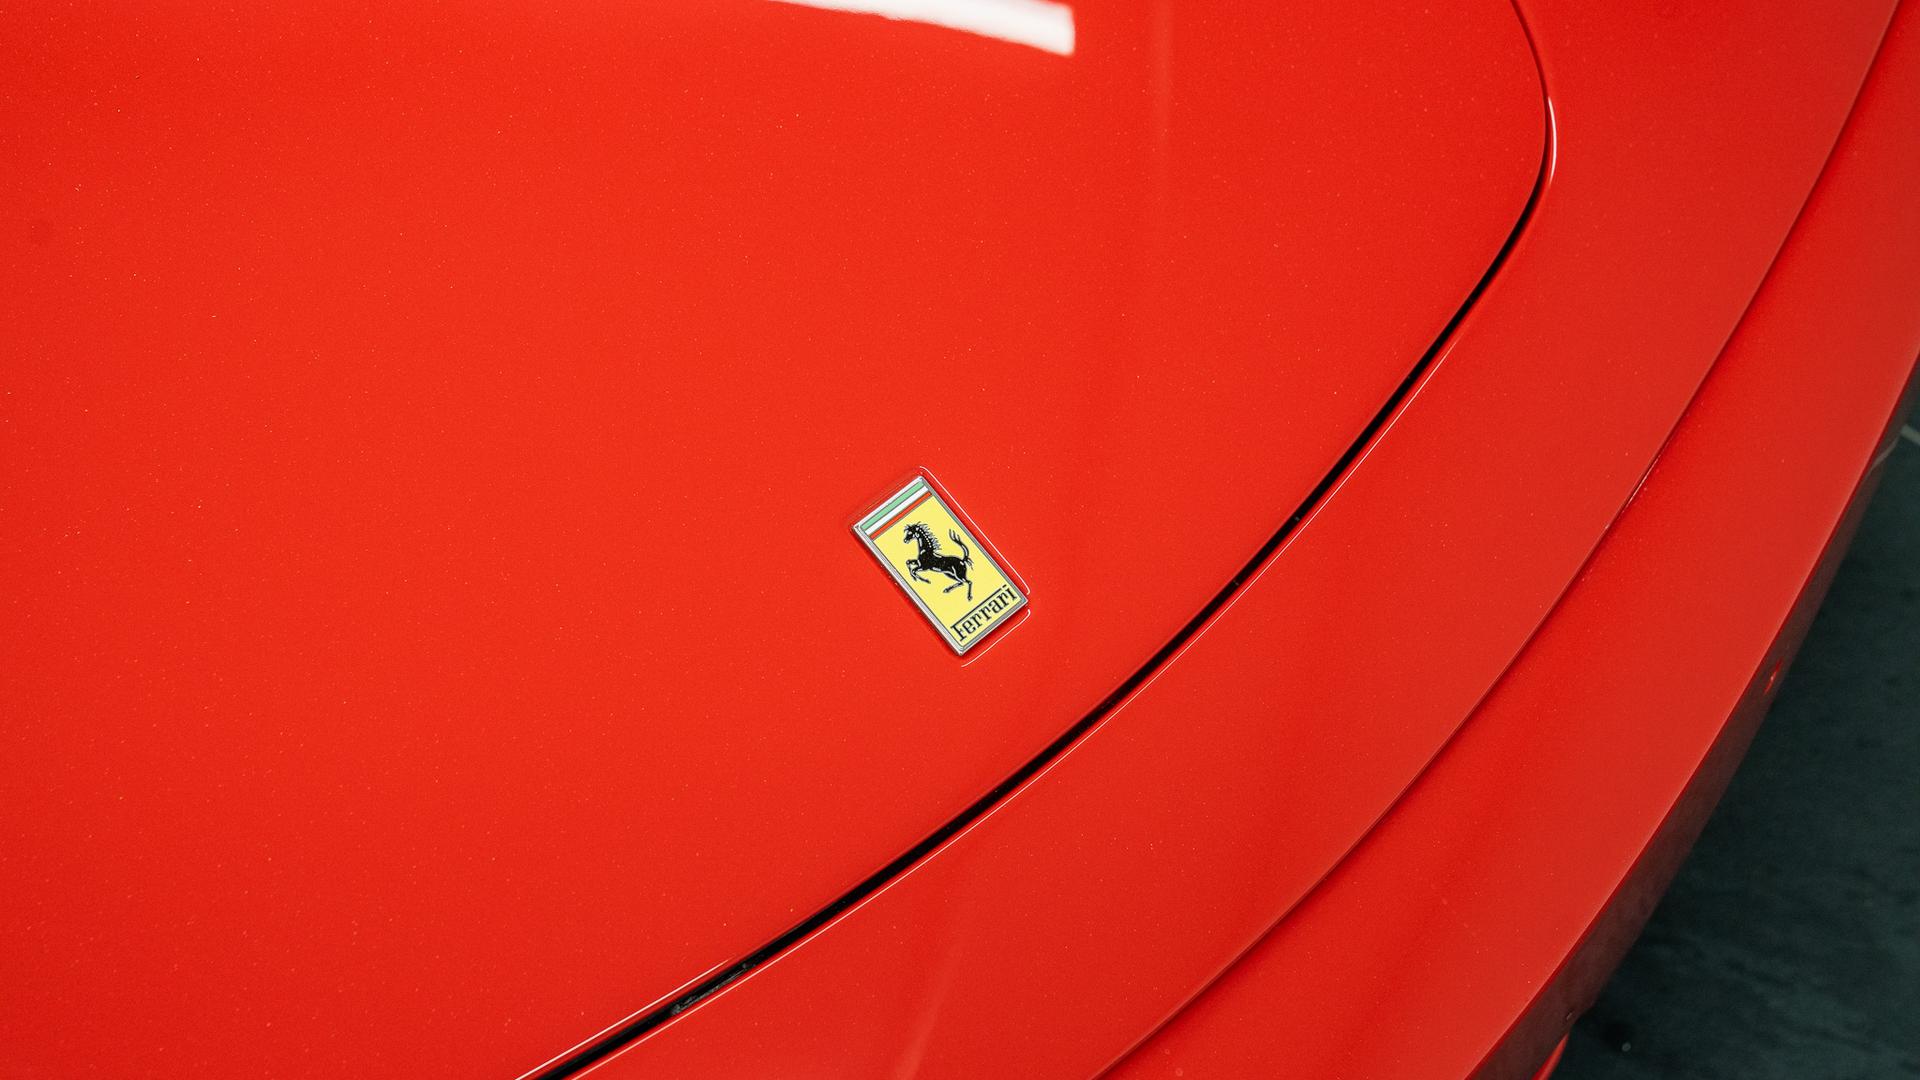 Ferrari F430 Photo 81d237f8-6422-425d-b146-7c8dacc6cb8d.jpg